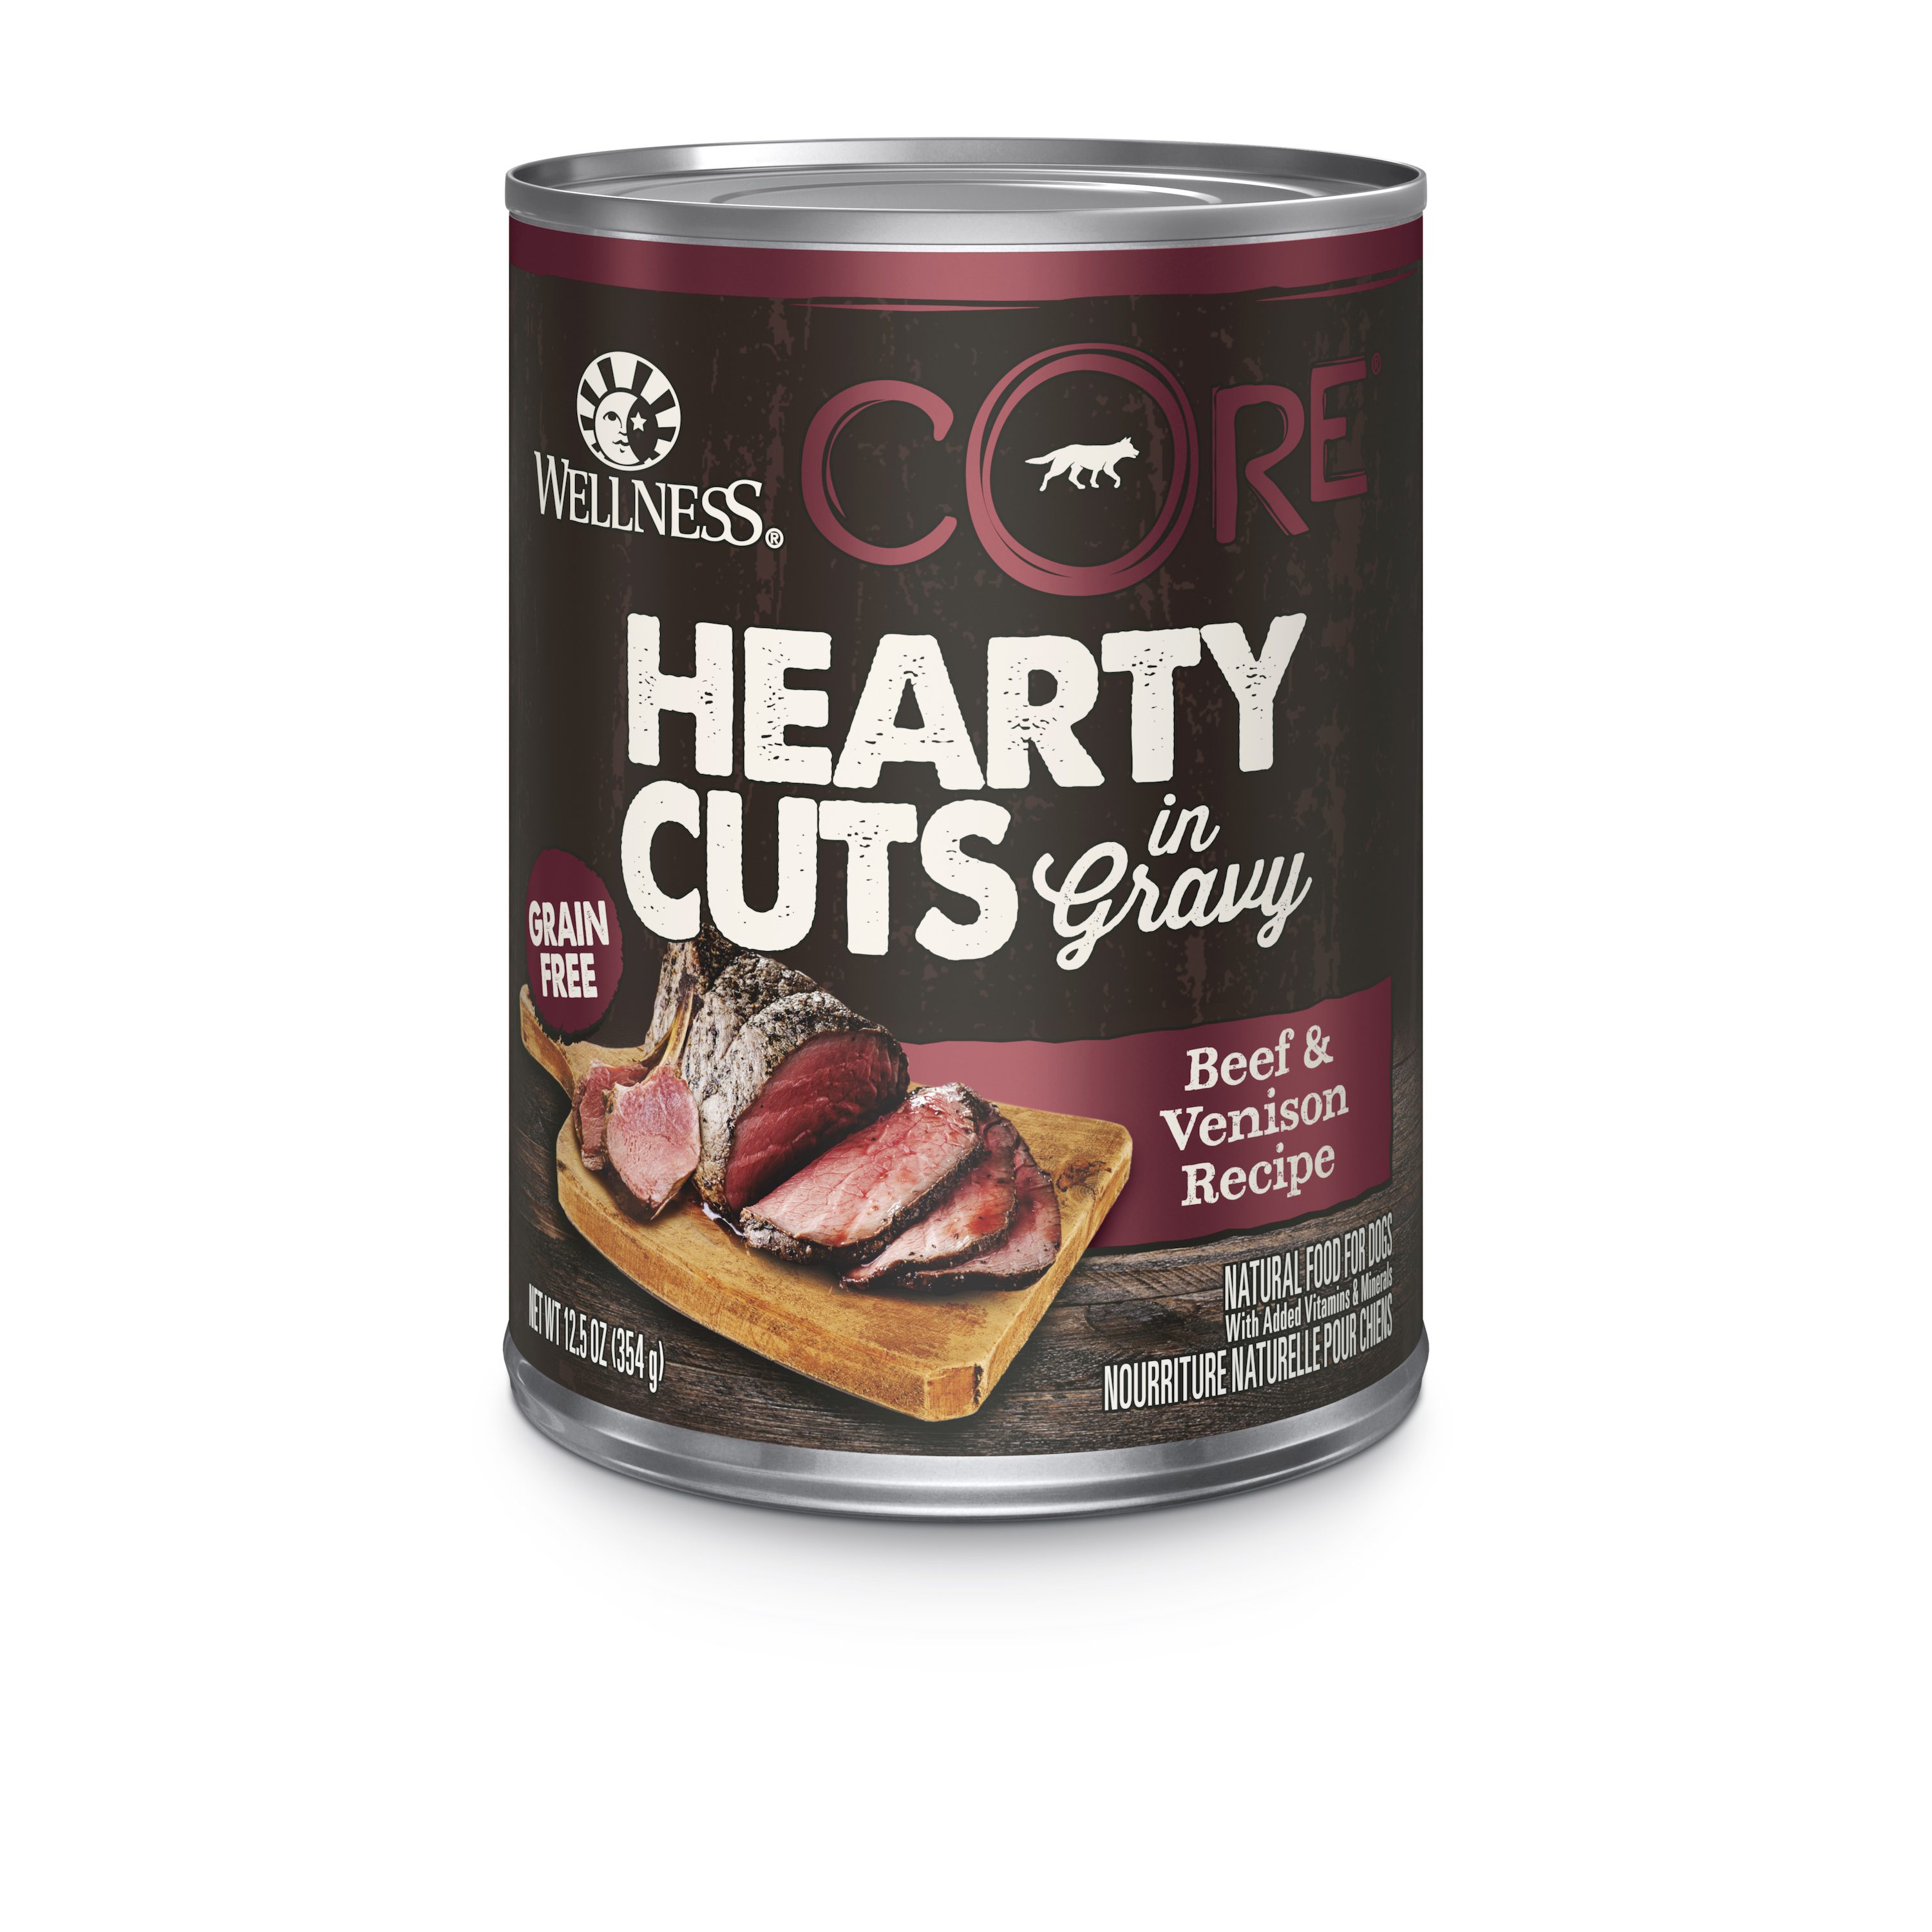 Wellness Core Hearty Cuts In Gravy Grain-Free Wet Food 354g